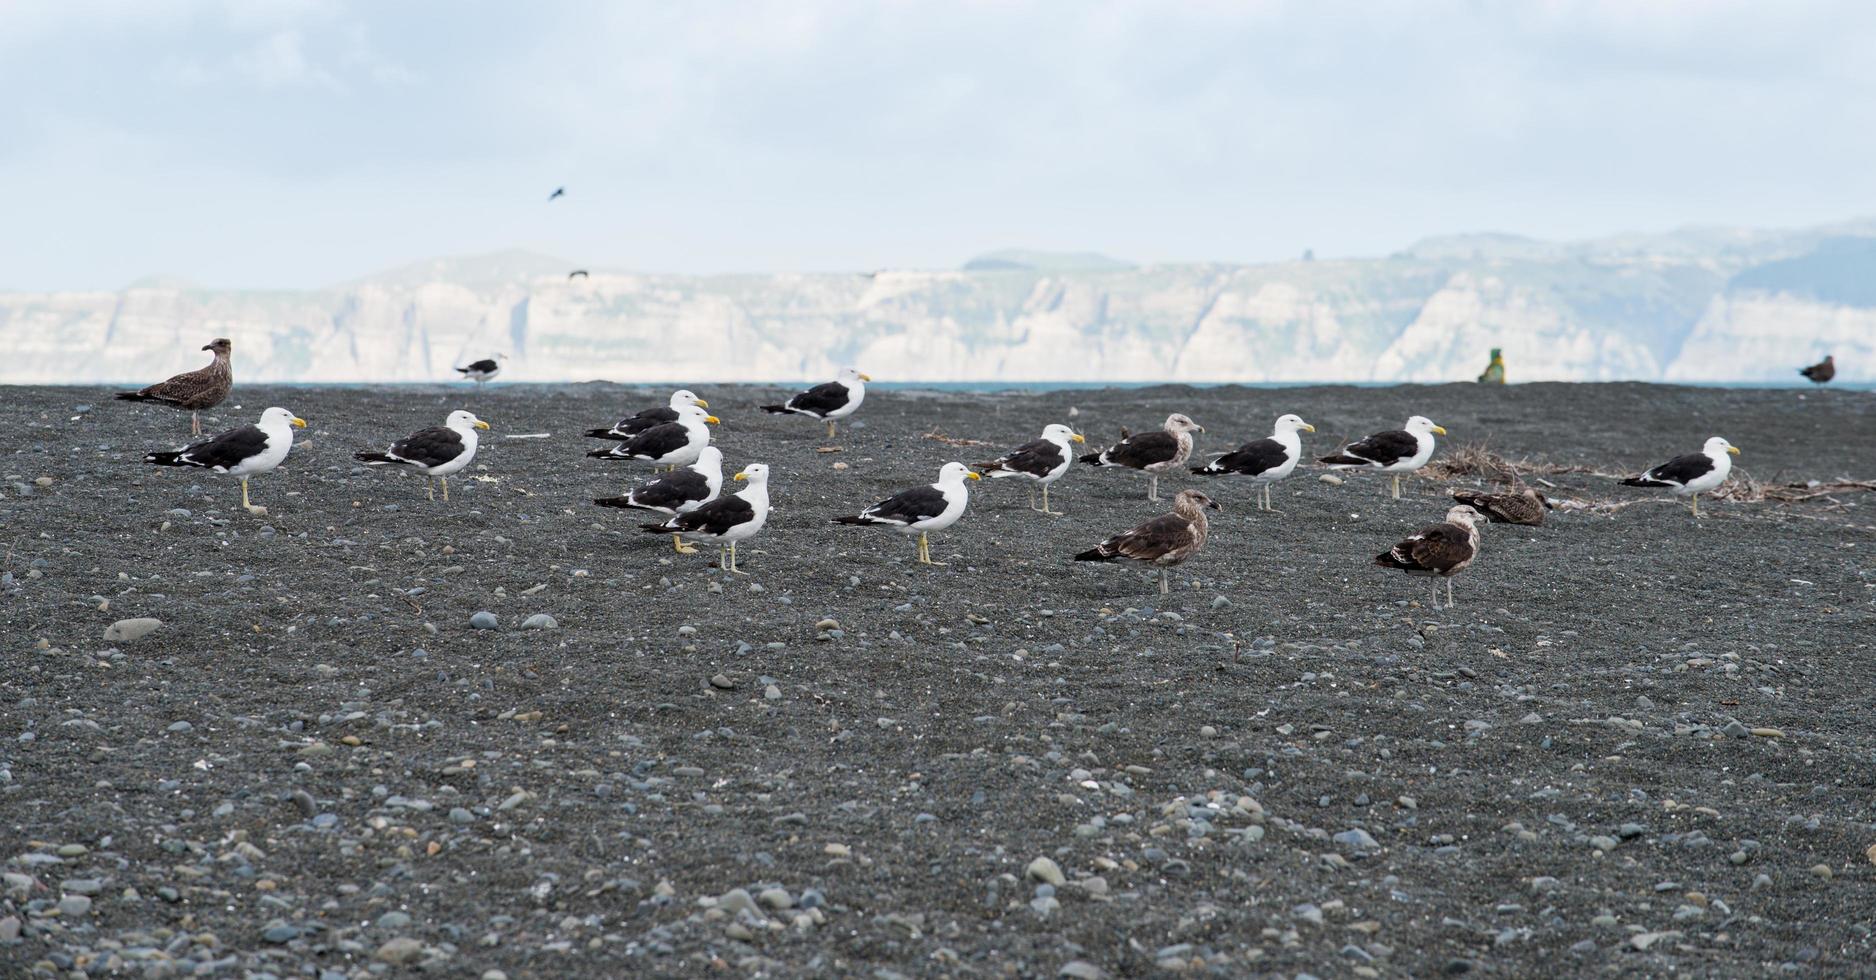 groupe d'oiseaux dans la région de la baie de hawke située entre napier et la ville de hastings avec la vue panoramique des ravisseurs du cap en arrière-plan. photo